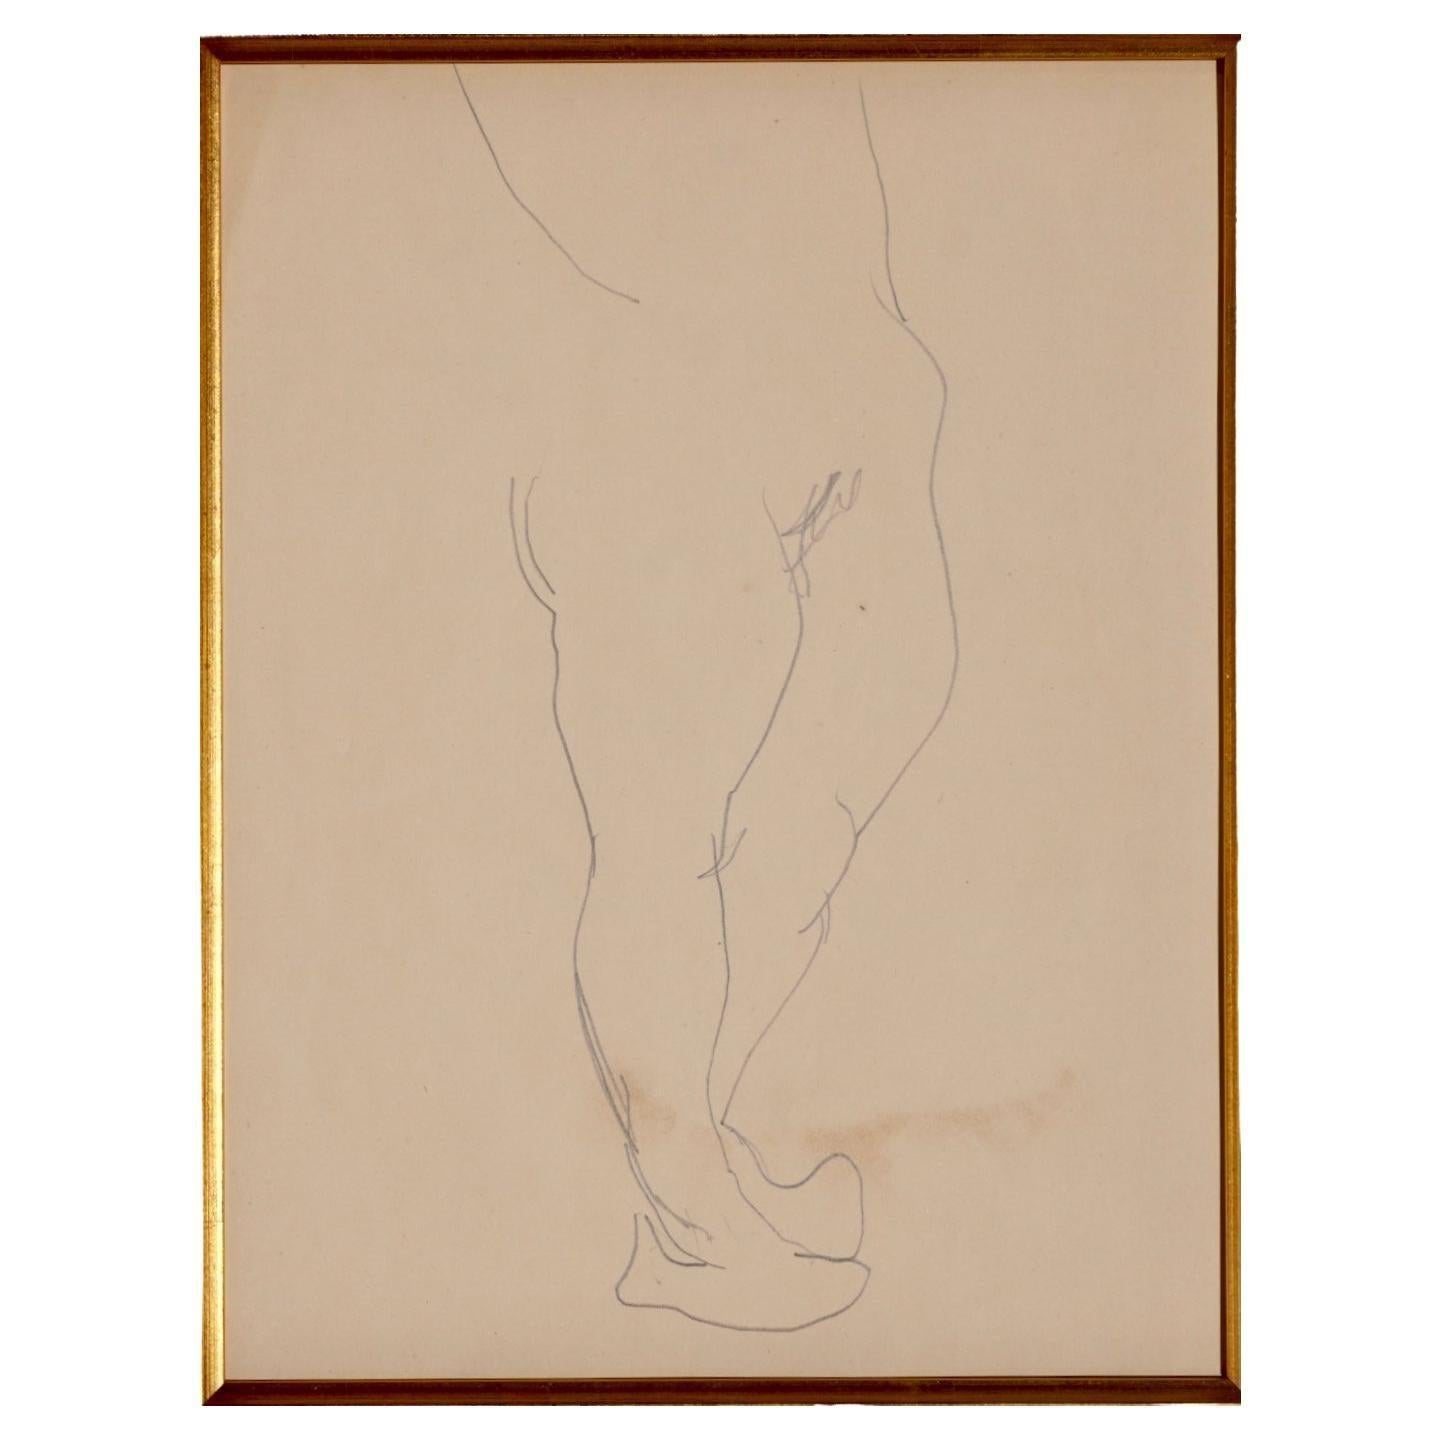 Henri Matisse (Français 1869-1954) Dessin au crayon d'un torse nu Catalogué sous le numéro Z 542 dans les Archives de l'artiste  Crayon sur papier, c.C. 1900.  

Feuille : 9 3/8 x 11 3/4 in.  
Encadré : 22,5 x 25,5 Cadre et verre de musée  

Note :